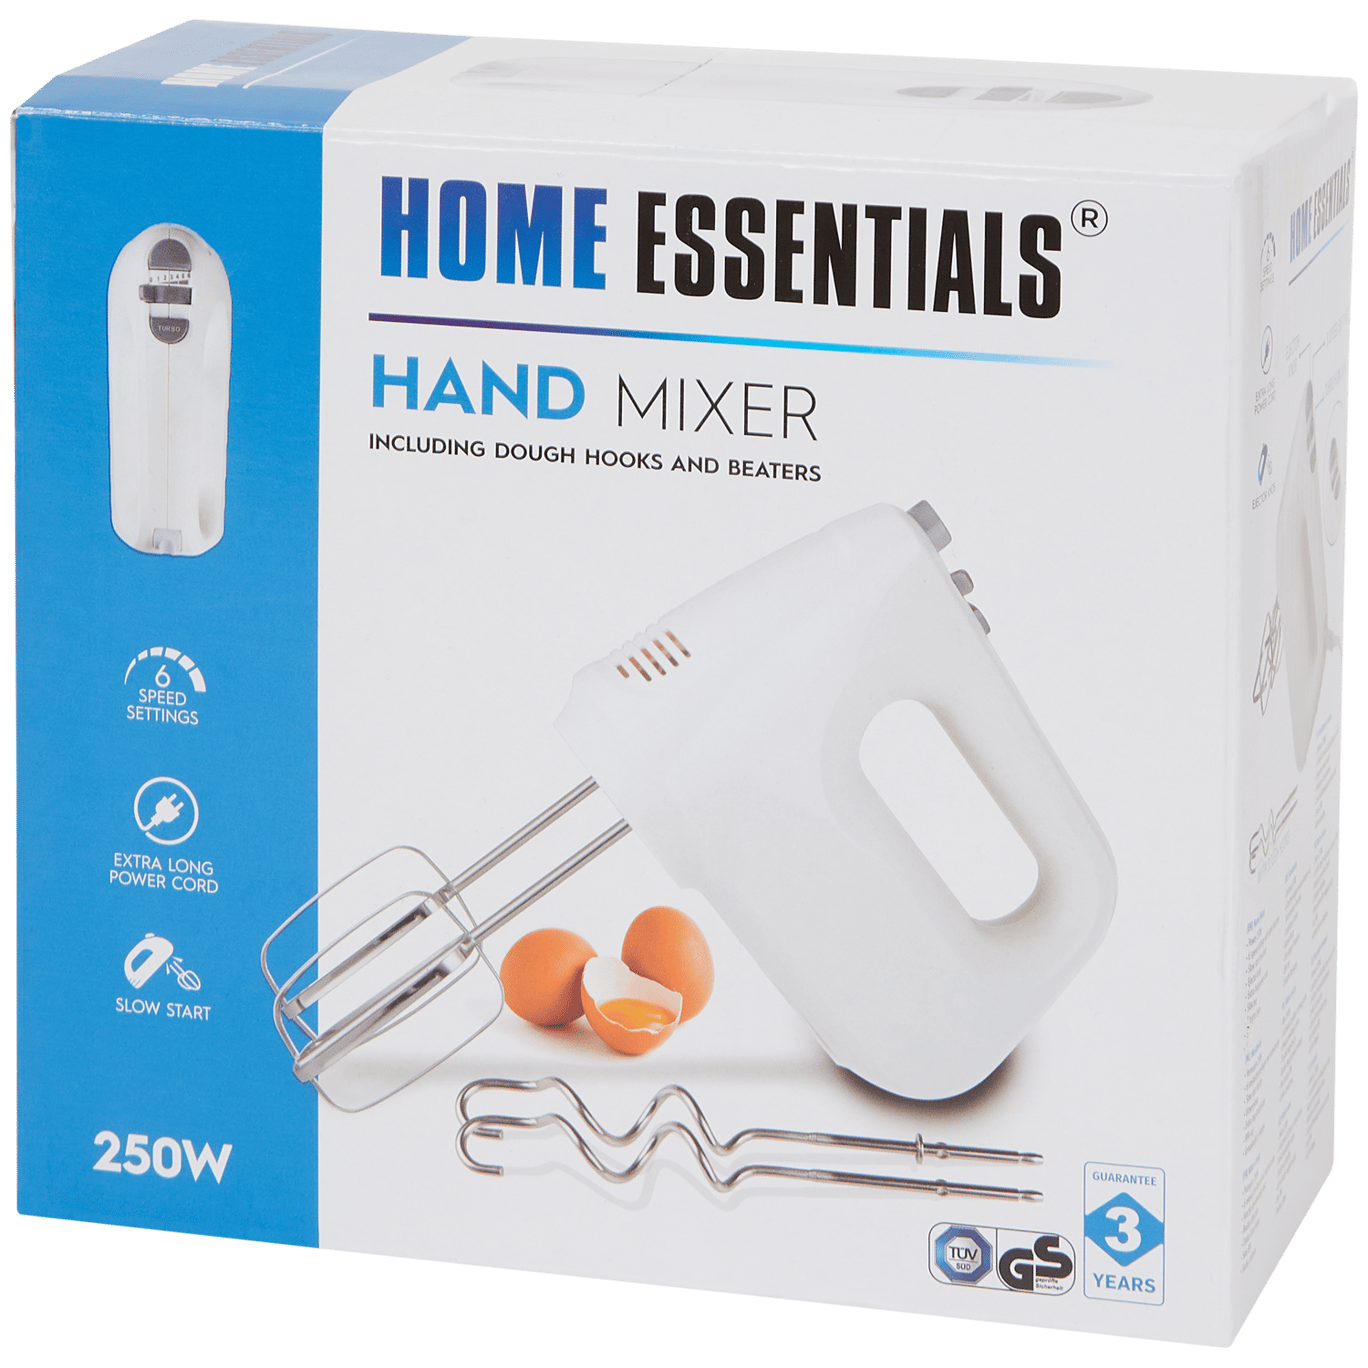 Batidora eléctrica Home Essentials